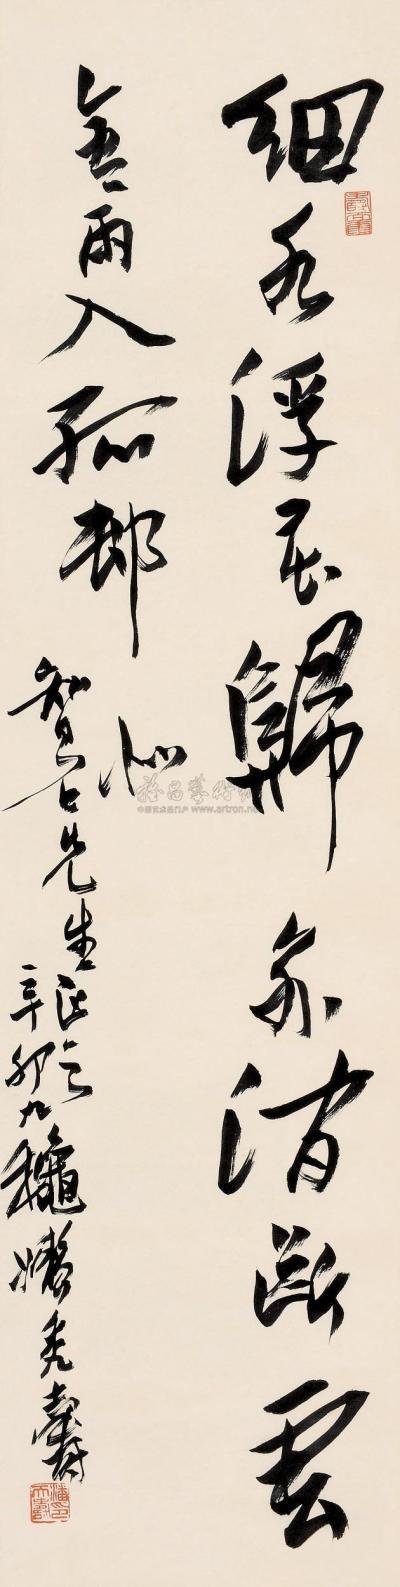 潘天寿 辛卯（1951）年作 行书 立轴